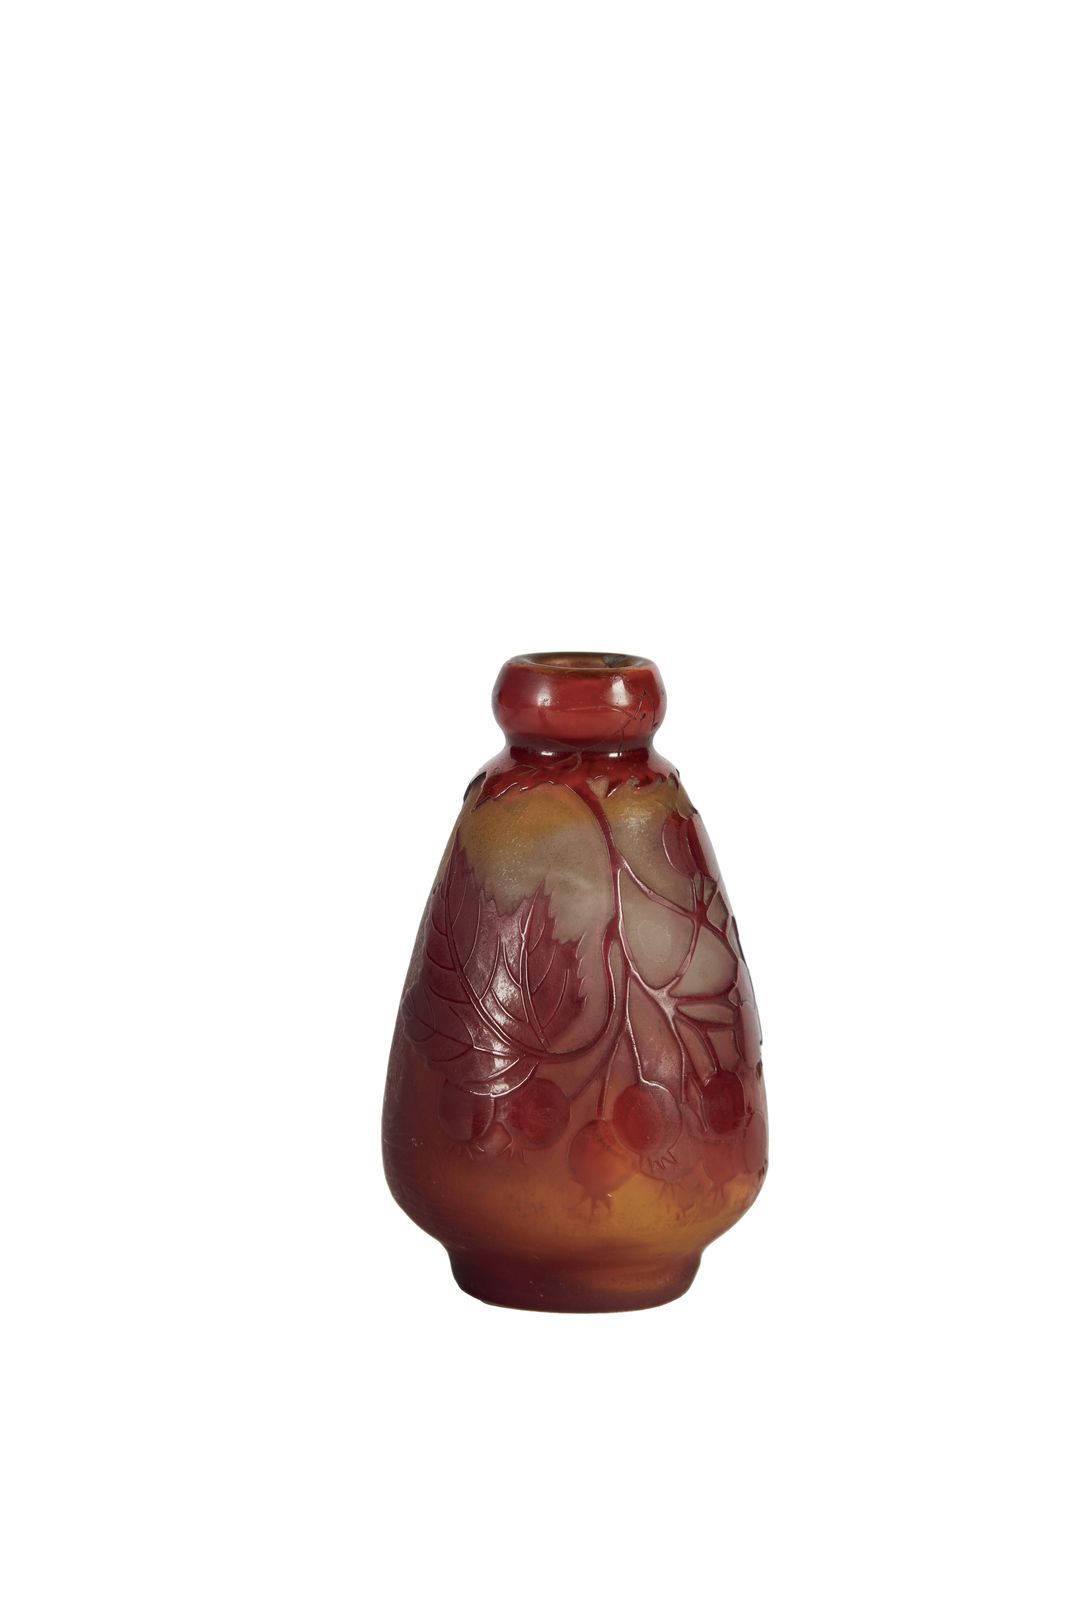 Null 268 Etablissements Gallé

Kleine Vase aus mehrschichtigem Glas mit geätztem&hellip;